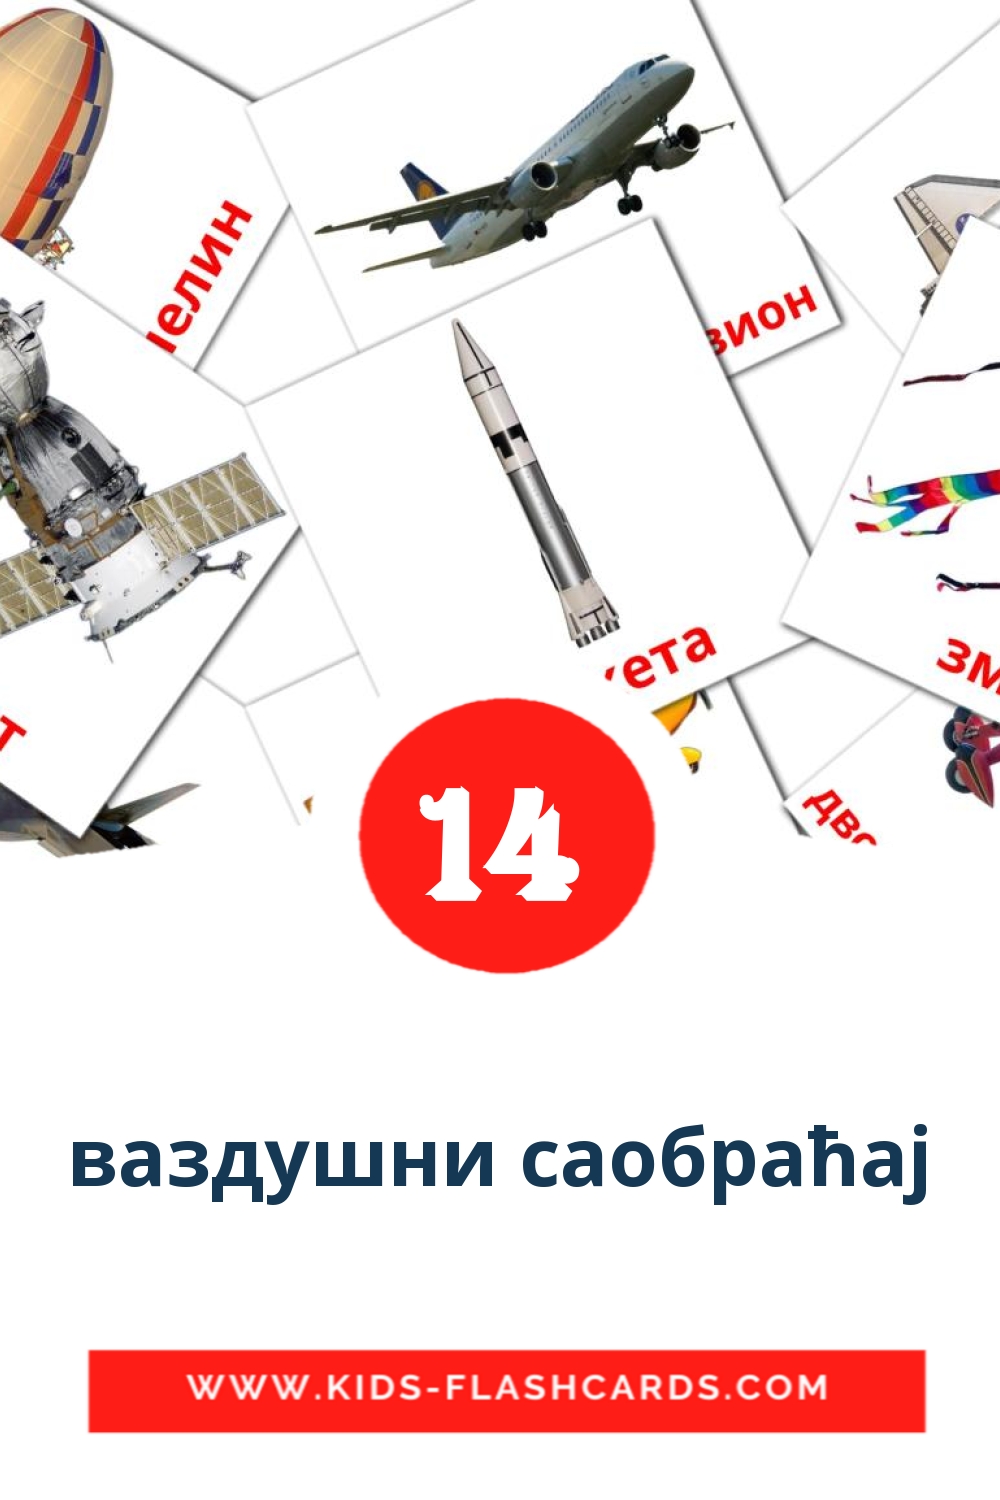 14 ваздушни саобраћај fotokaarten voor kleuters in het servisch(cyrillisch)